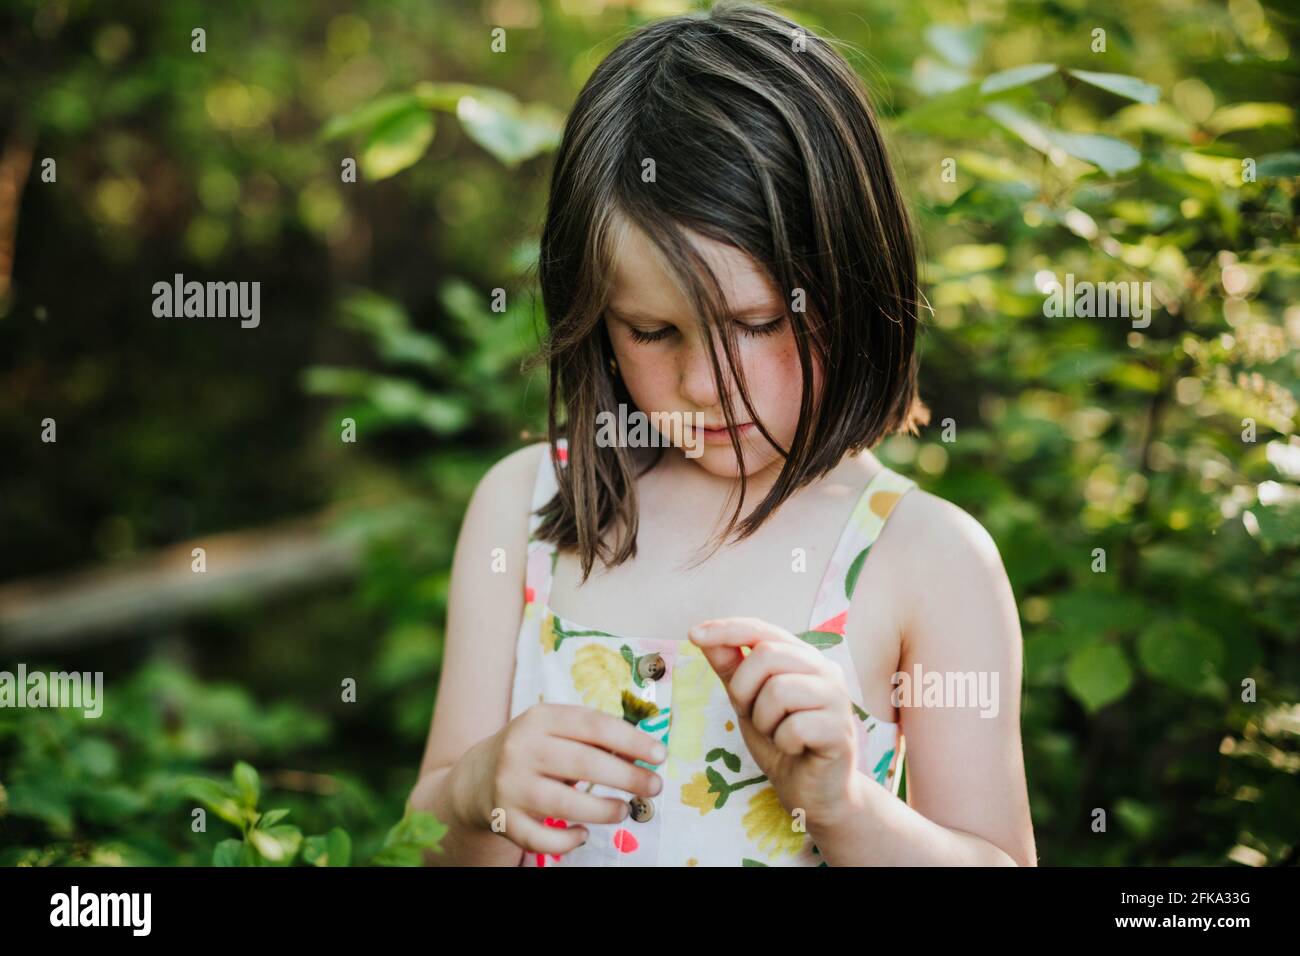 La jeune fille regarde une pissenlit entourée d'arbres et autres espaces verts Banque D'Images